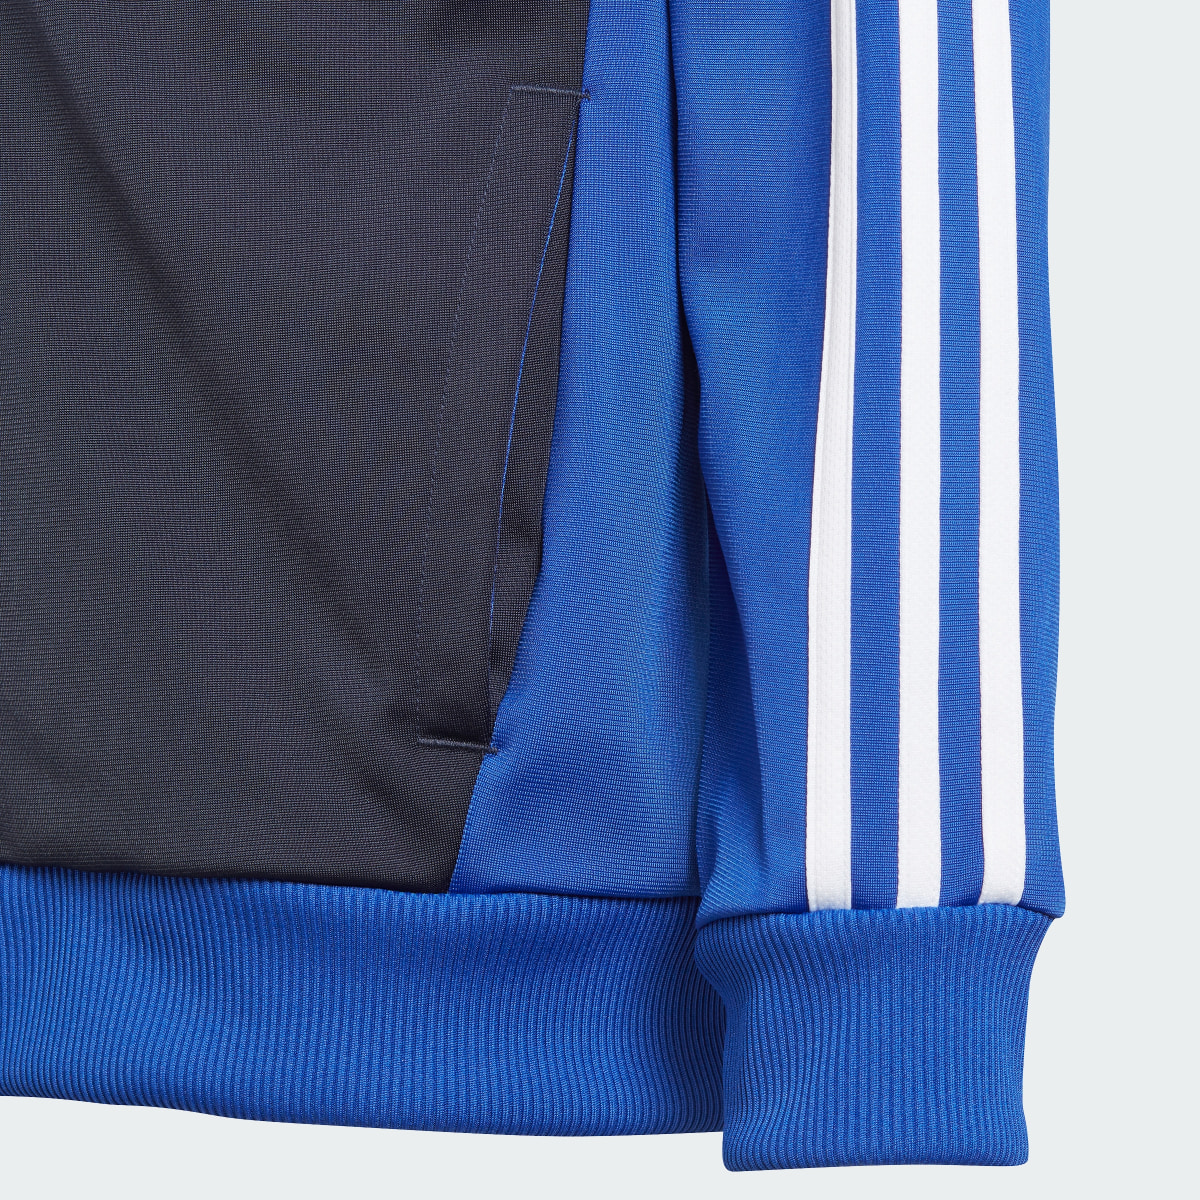 Adidas Essentials 3-Stripes Tiberio Track Suit. 10